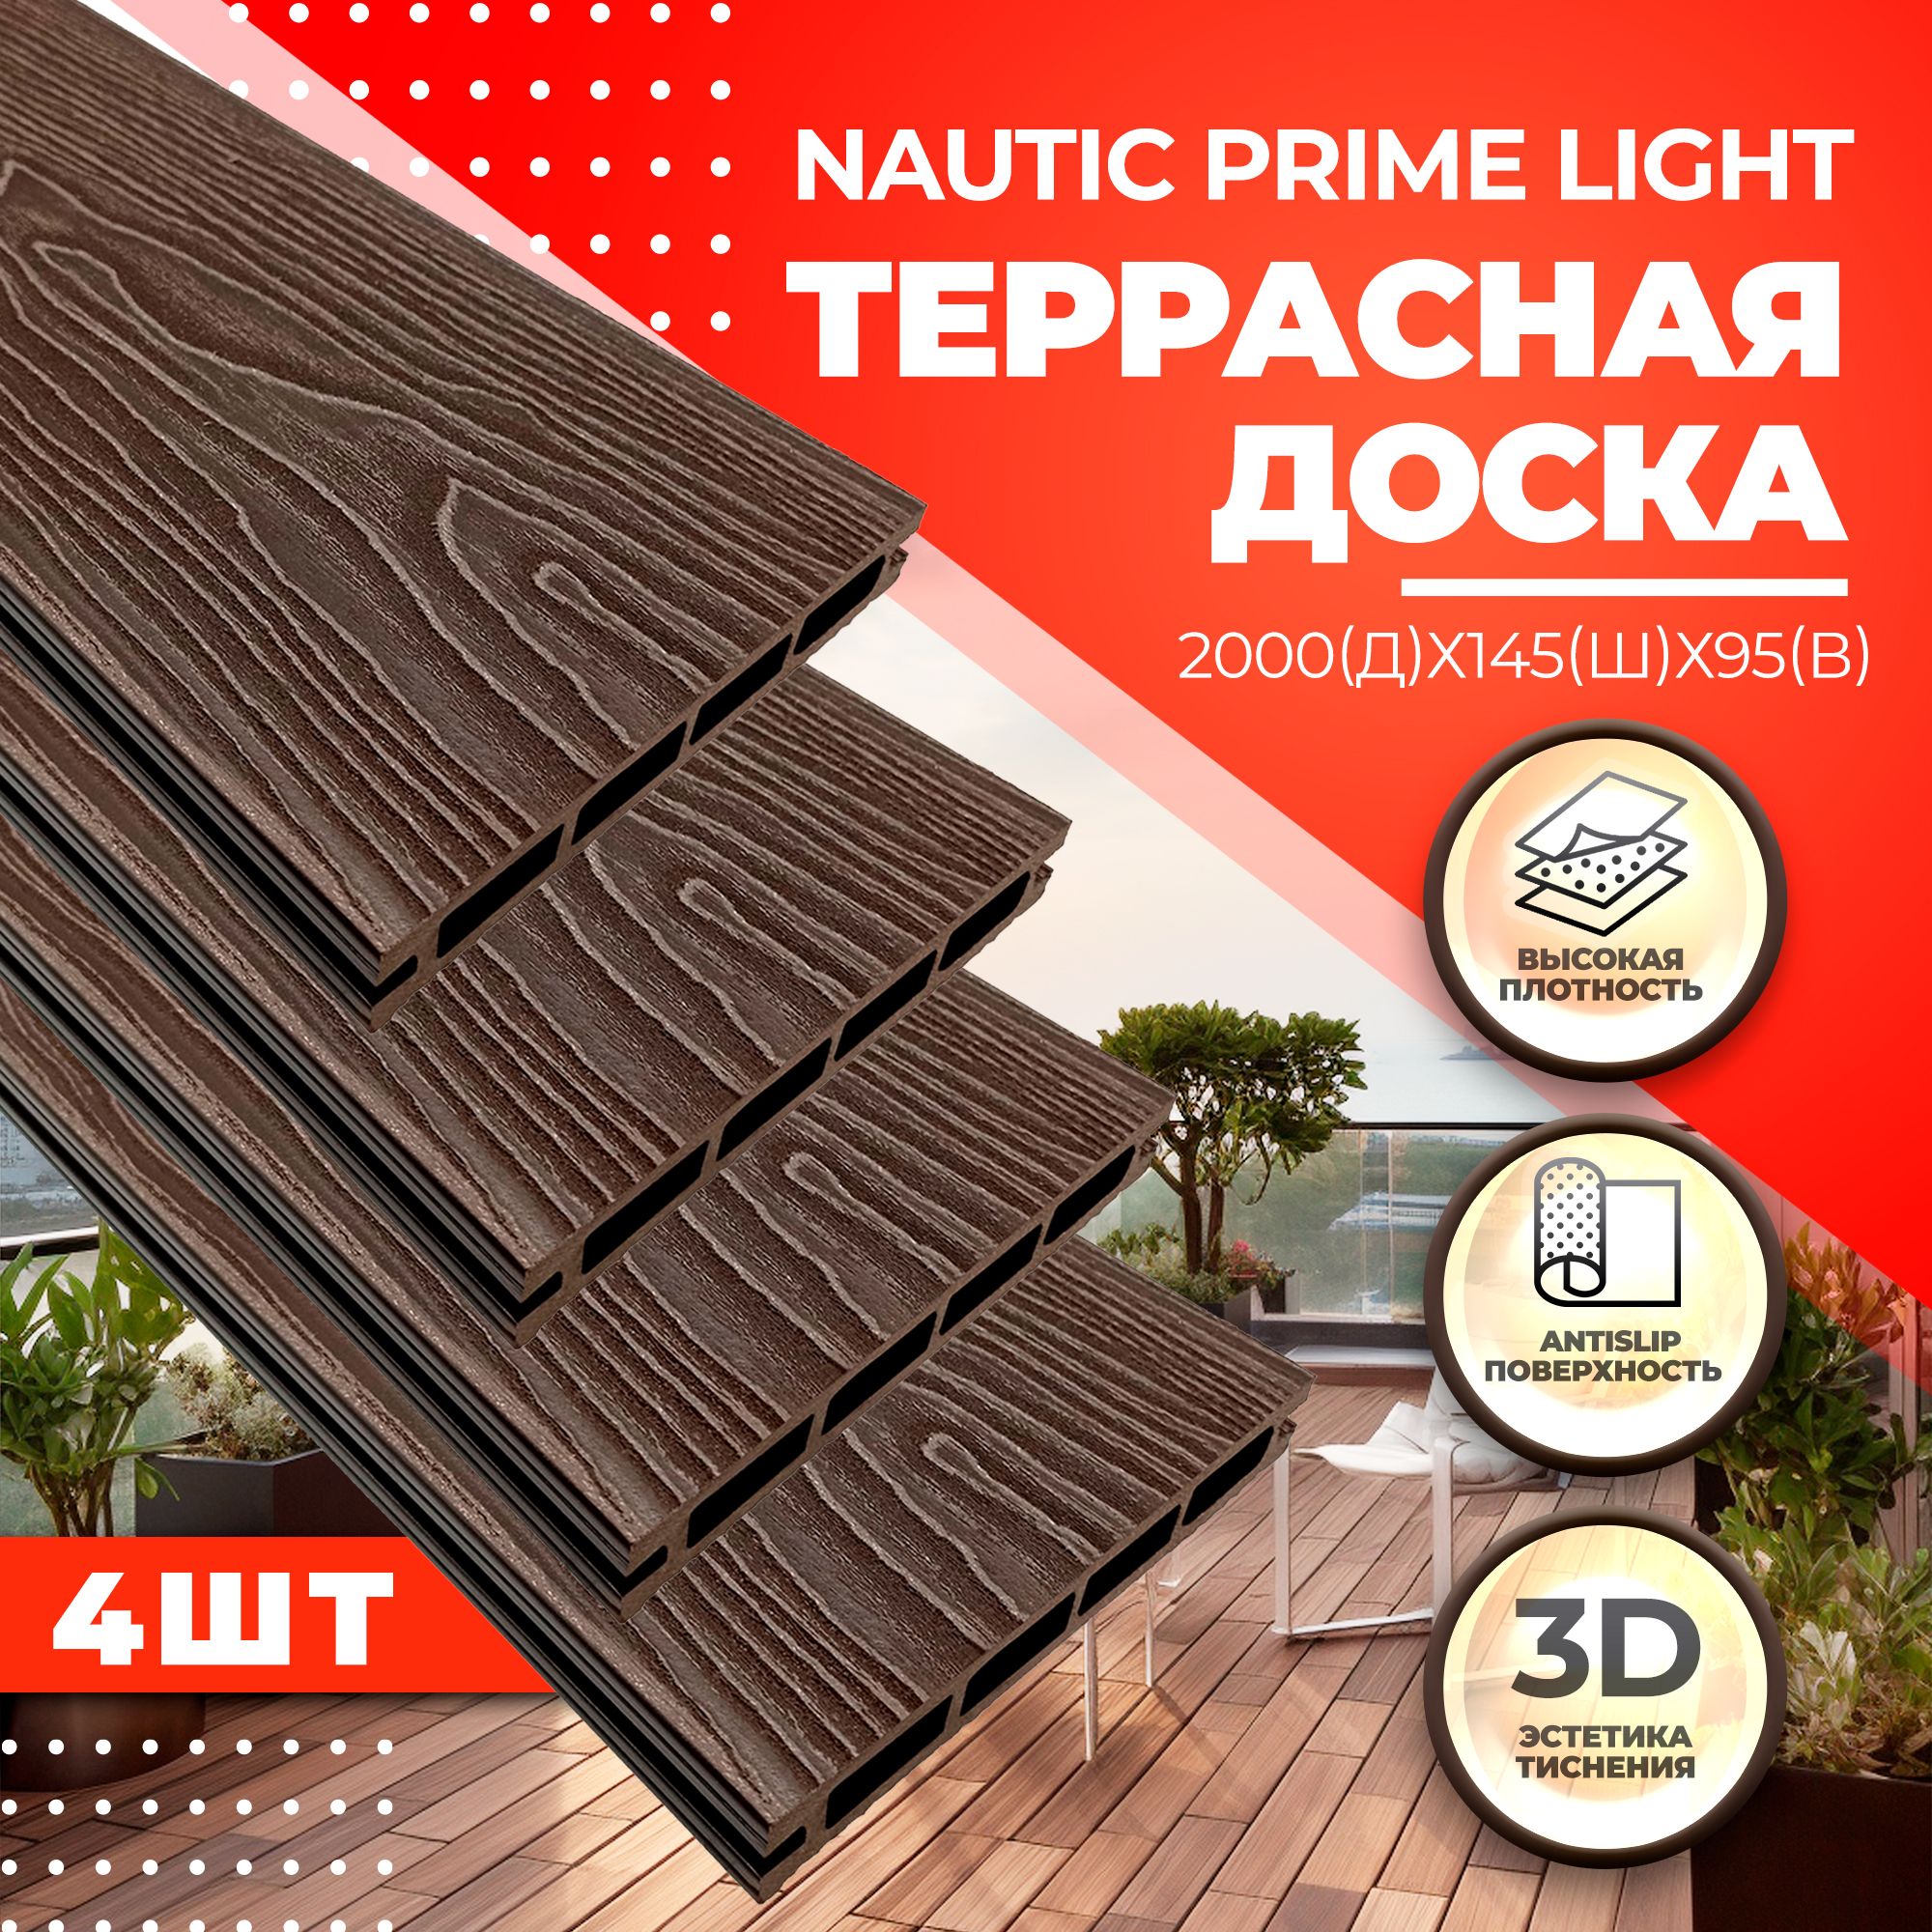 фото Комплект террасной доски nauticprime light esthetic wood cnpl2000v, венге, 4 шт.